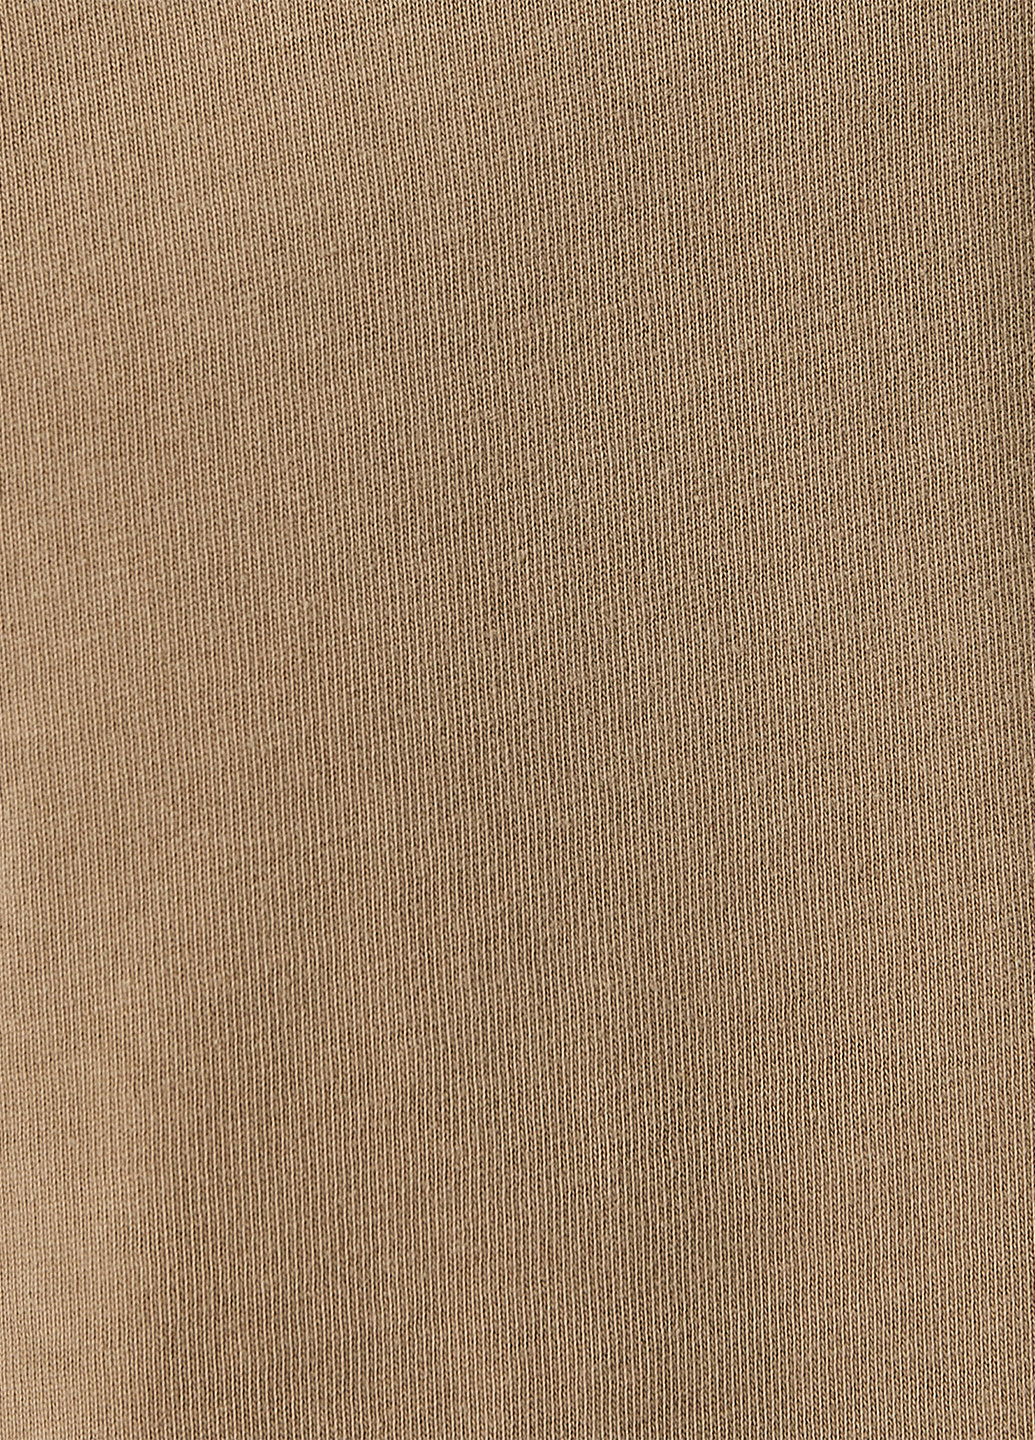 Светло-коричневая футболка KOTON